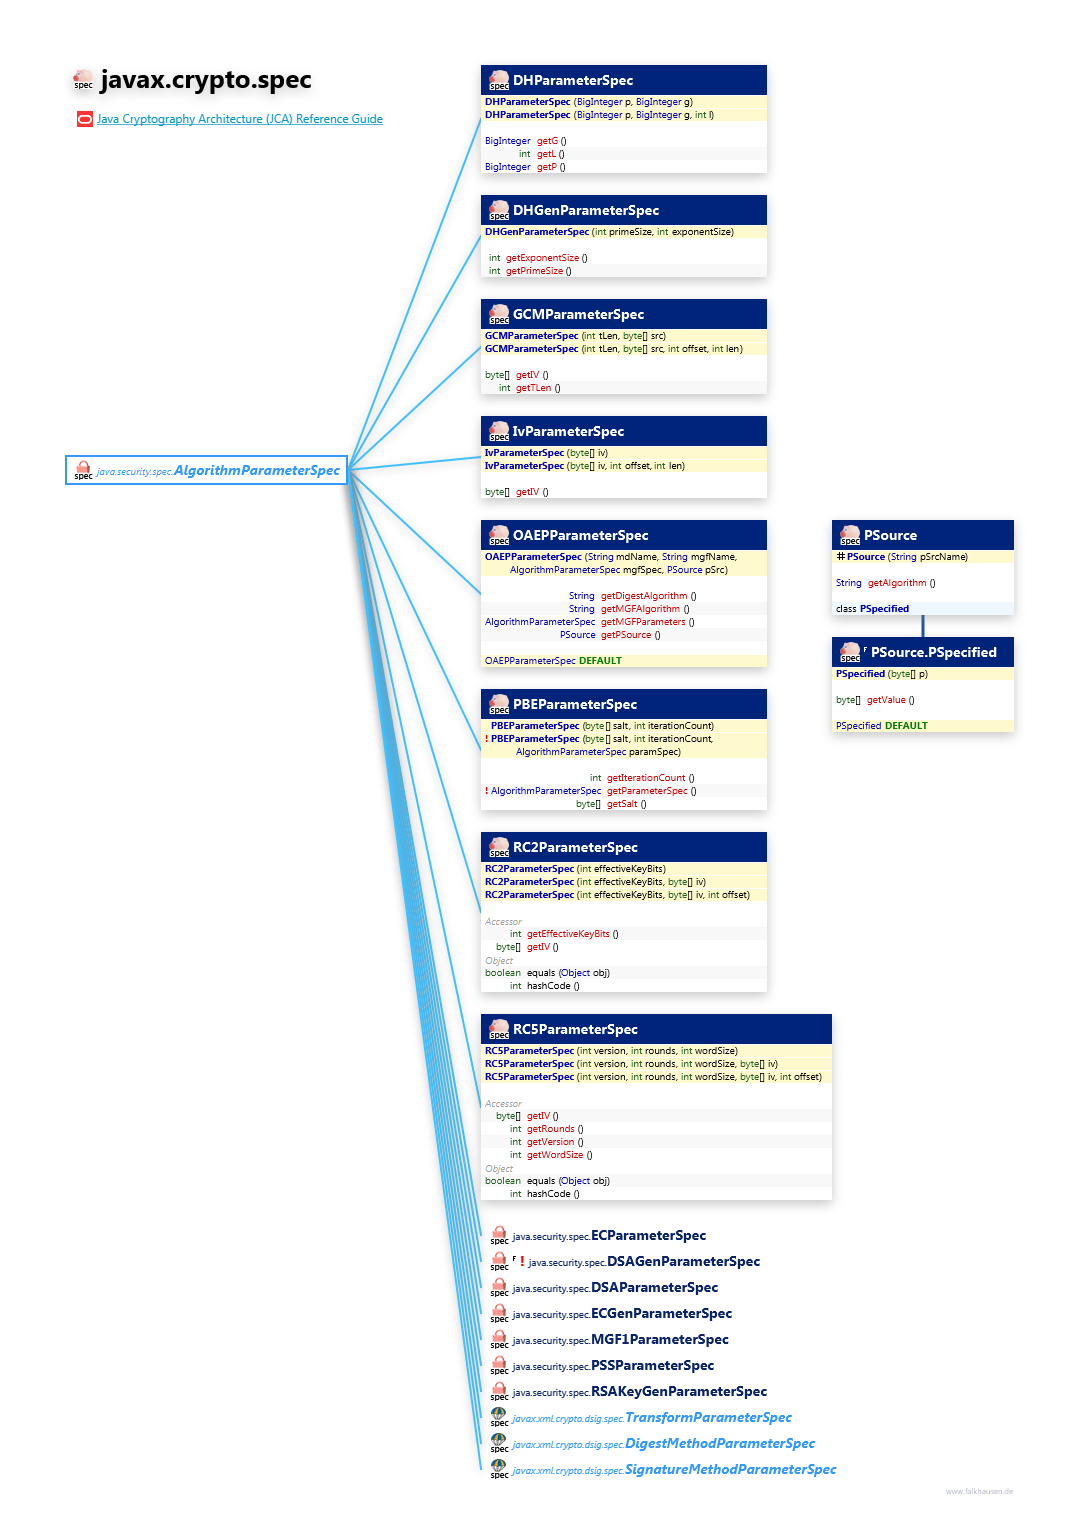 javax.crypto.spec ParameterSpec class diagram and api documentation for Java 8